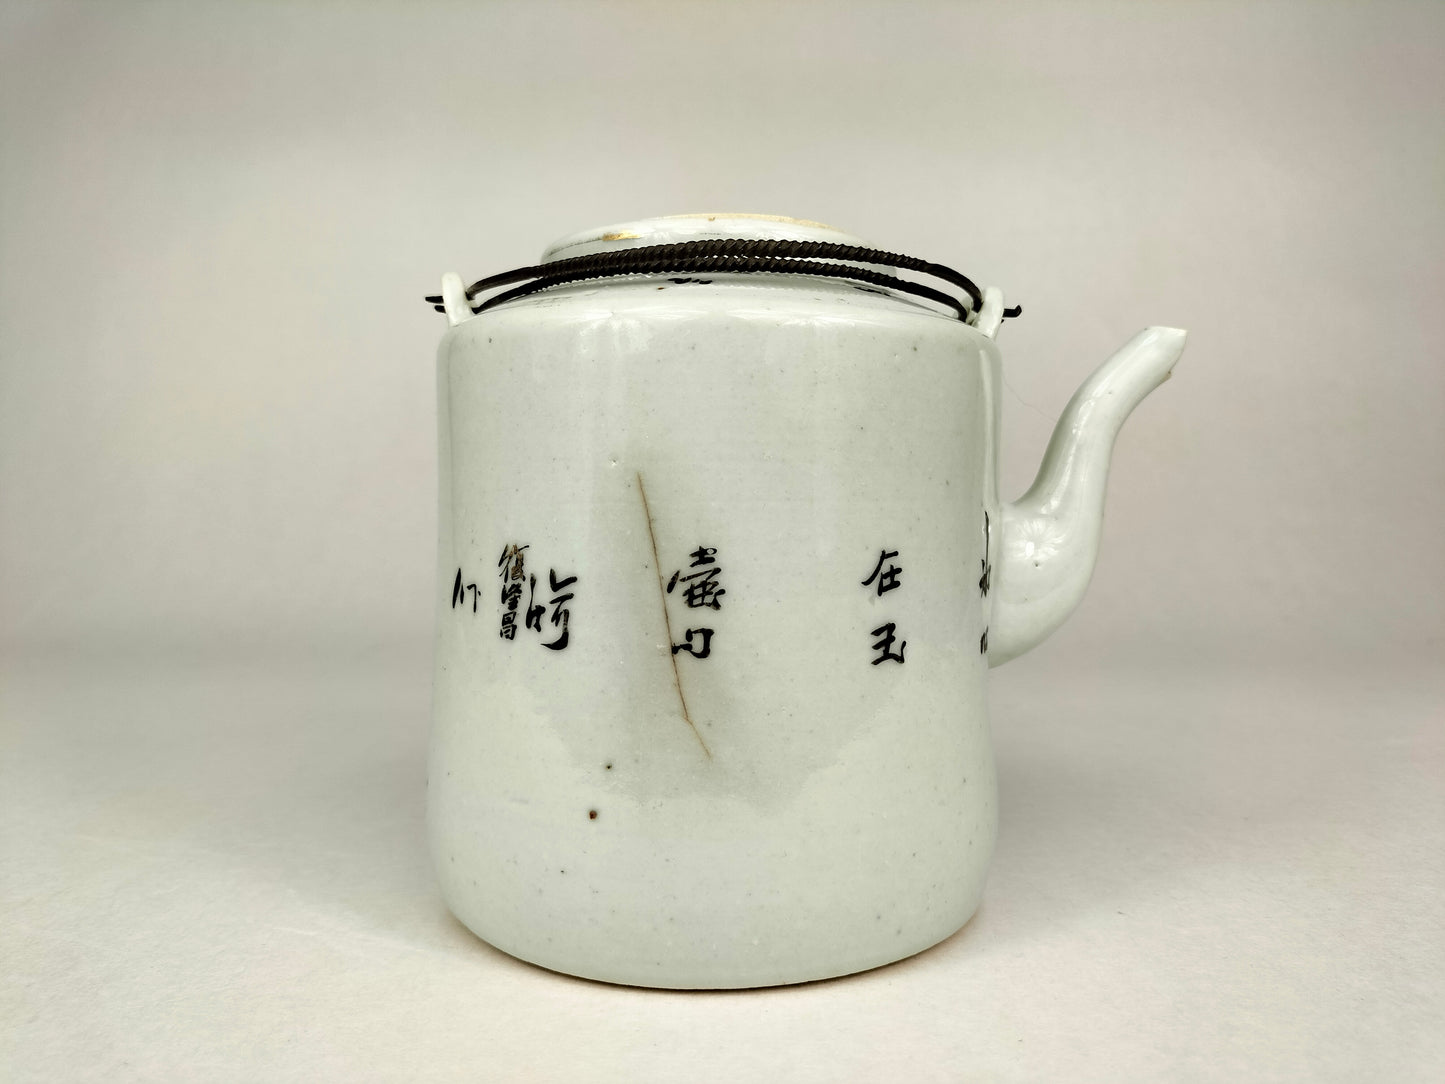 إبريق شاي صيني عتيق مزين بأشكال // فترة الجمهورية (1912-1949)